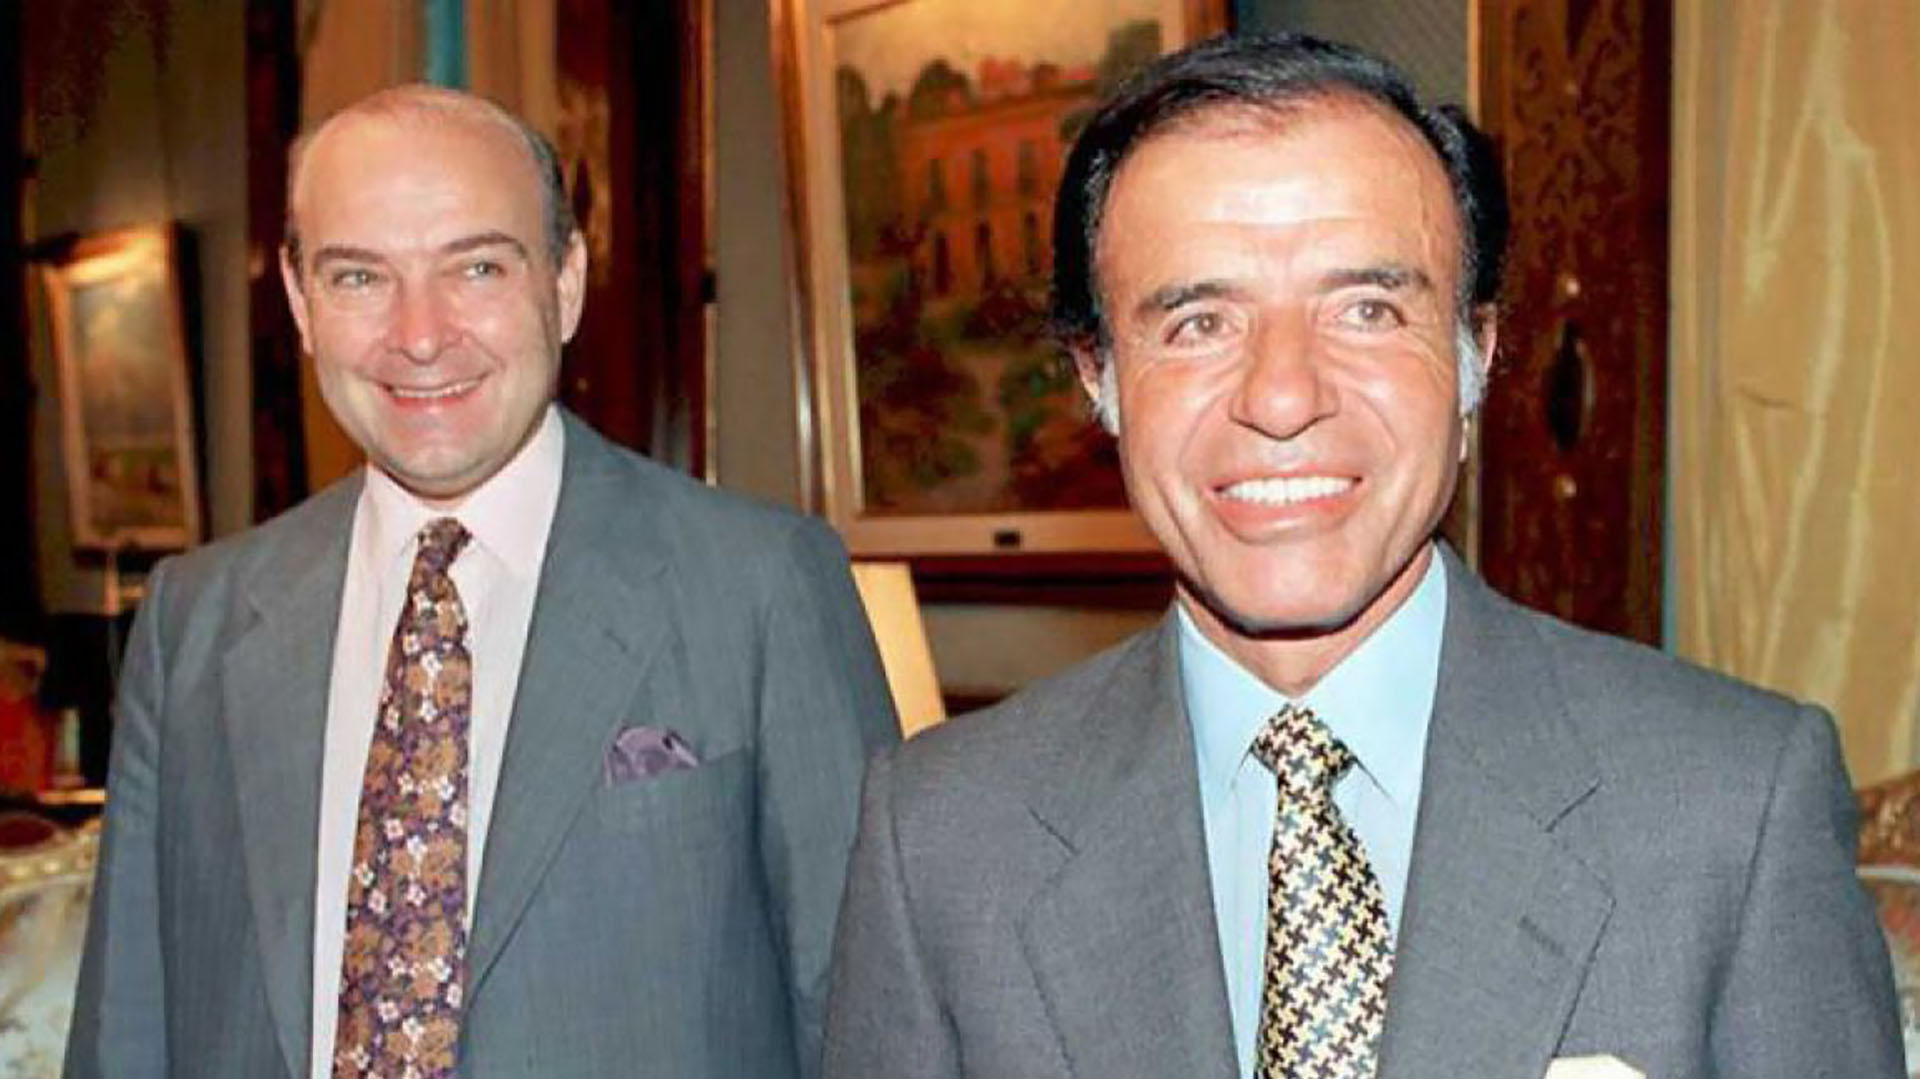 Fotografía del presidente de la nación, Carlos Menem, y su ministro de economía, Domingo Cavallo.